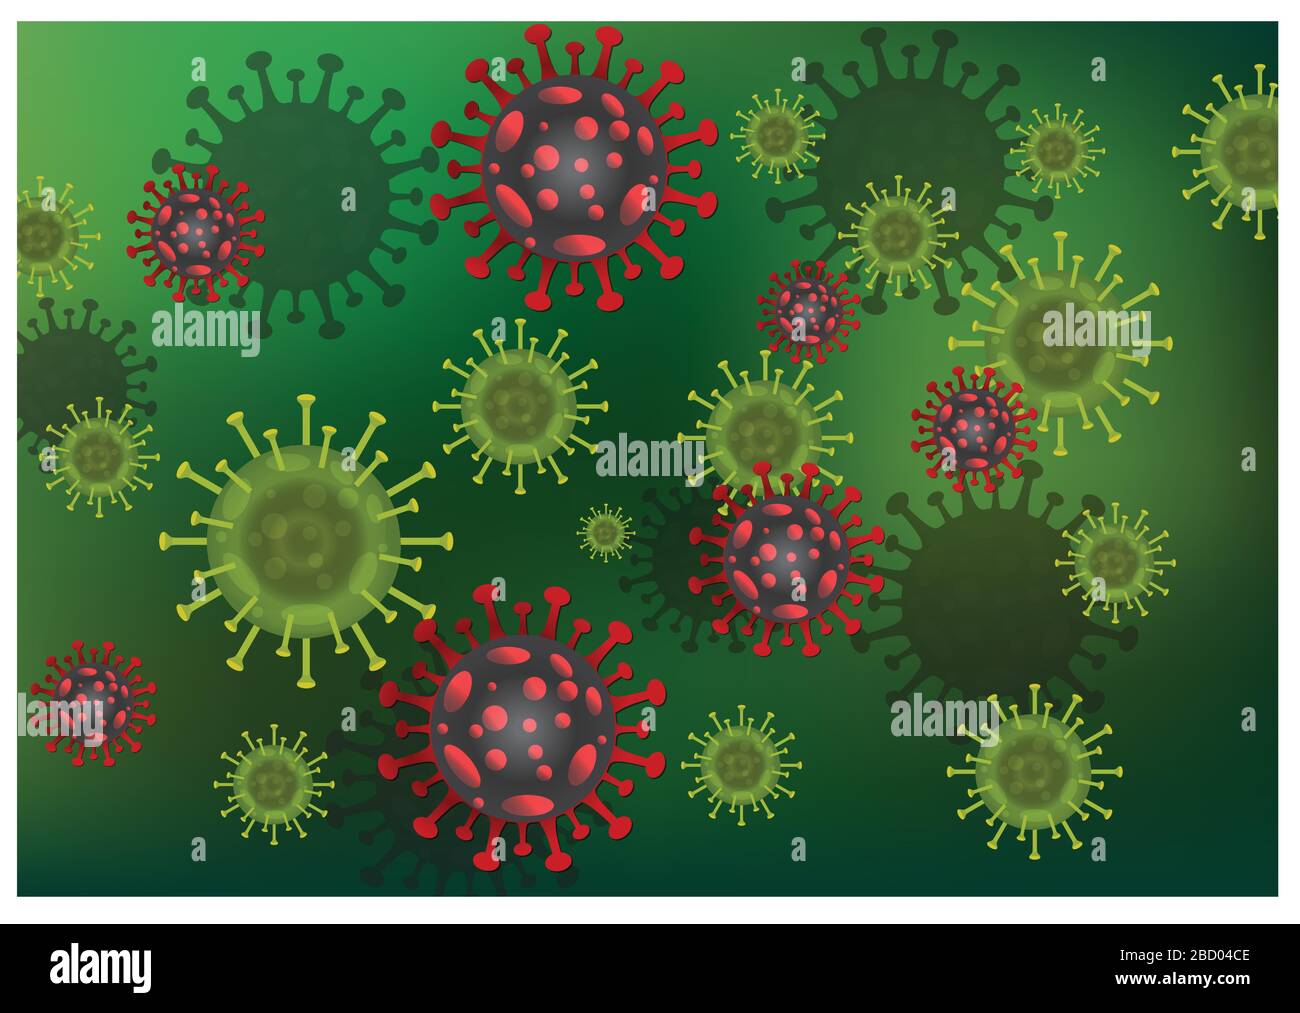 Kovid-19 Influenza-Corona-Virus-Hintergrund: Die Kovid19-Krankheit ist in diesem Fall eine Gesundheitsgefährlichkeit, die den menschlichen Körper und die Grippe als Grippe beeinflusst. 3 Stock Vektor